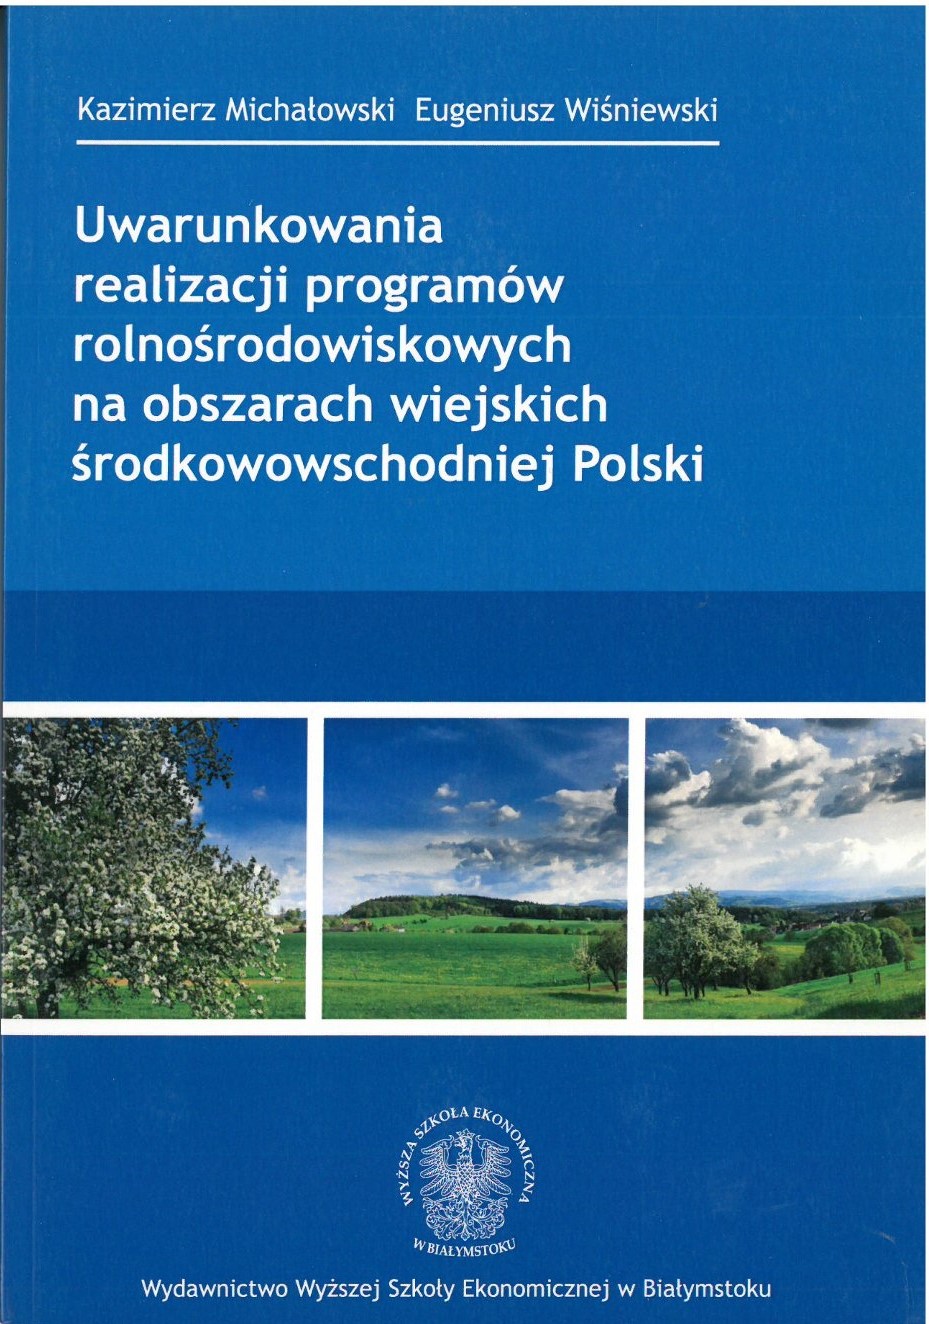 Uwarunkowania realizacji programów rolnośrodowiskowych na obszarach wiejskich środkowowschodniej Polski.